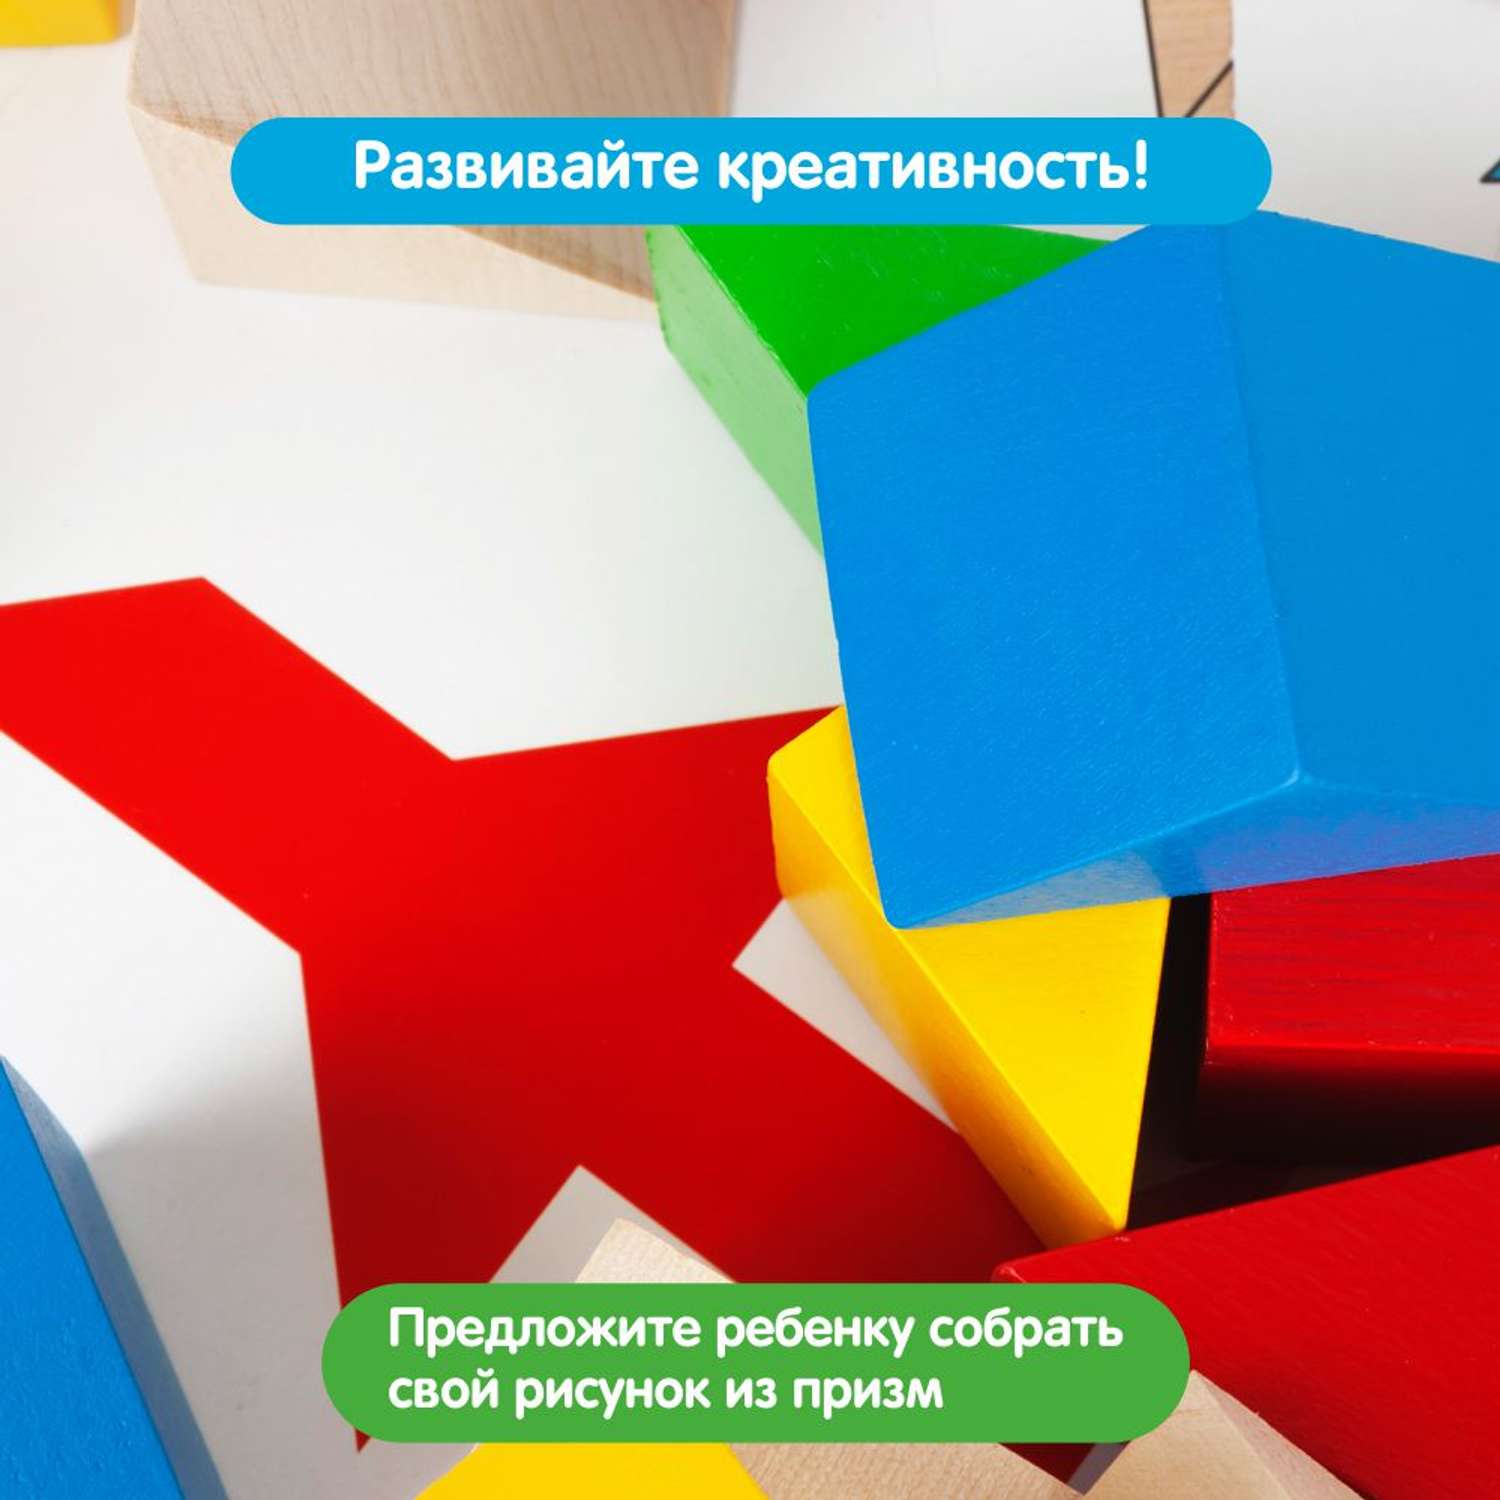 Обучающий набор Краснокамская игрушка Занимательные призмы - фото 7